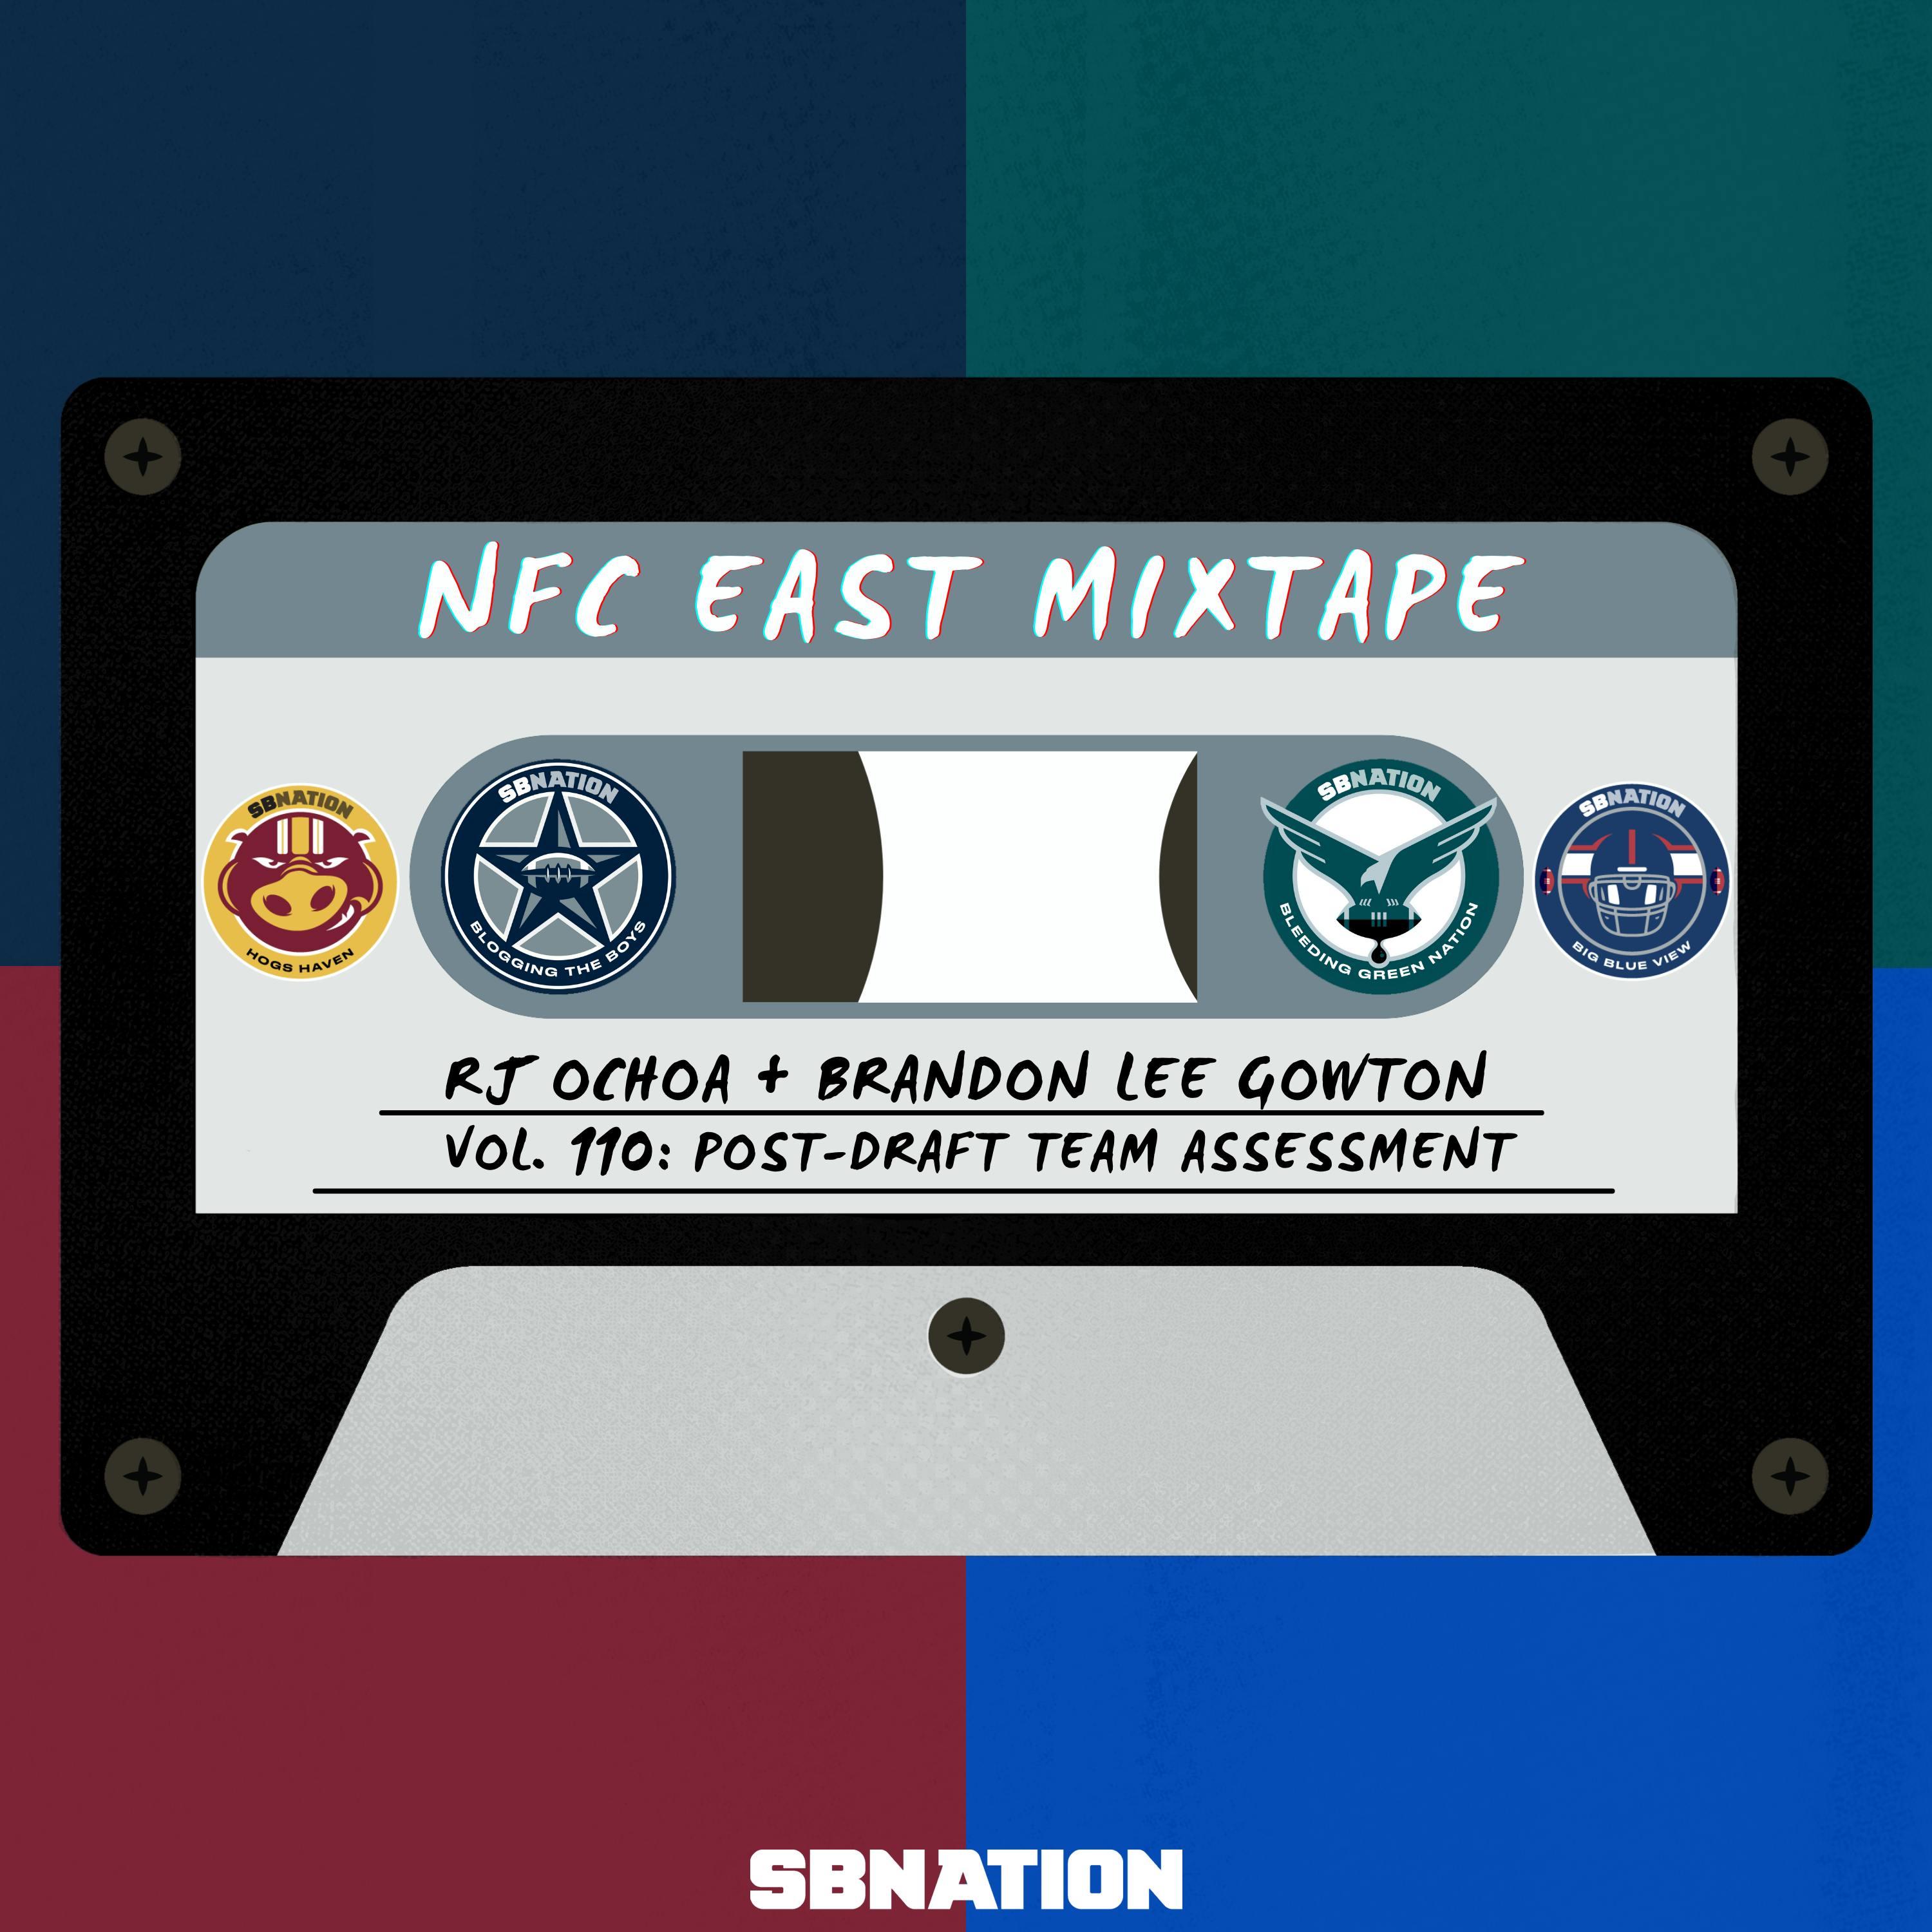 NFC East Mixtape Vol. 110: Post-Draft Team Assessment